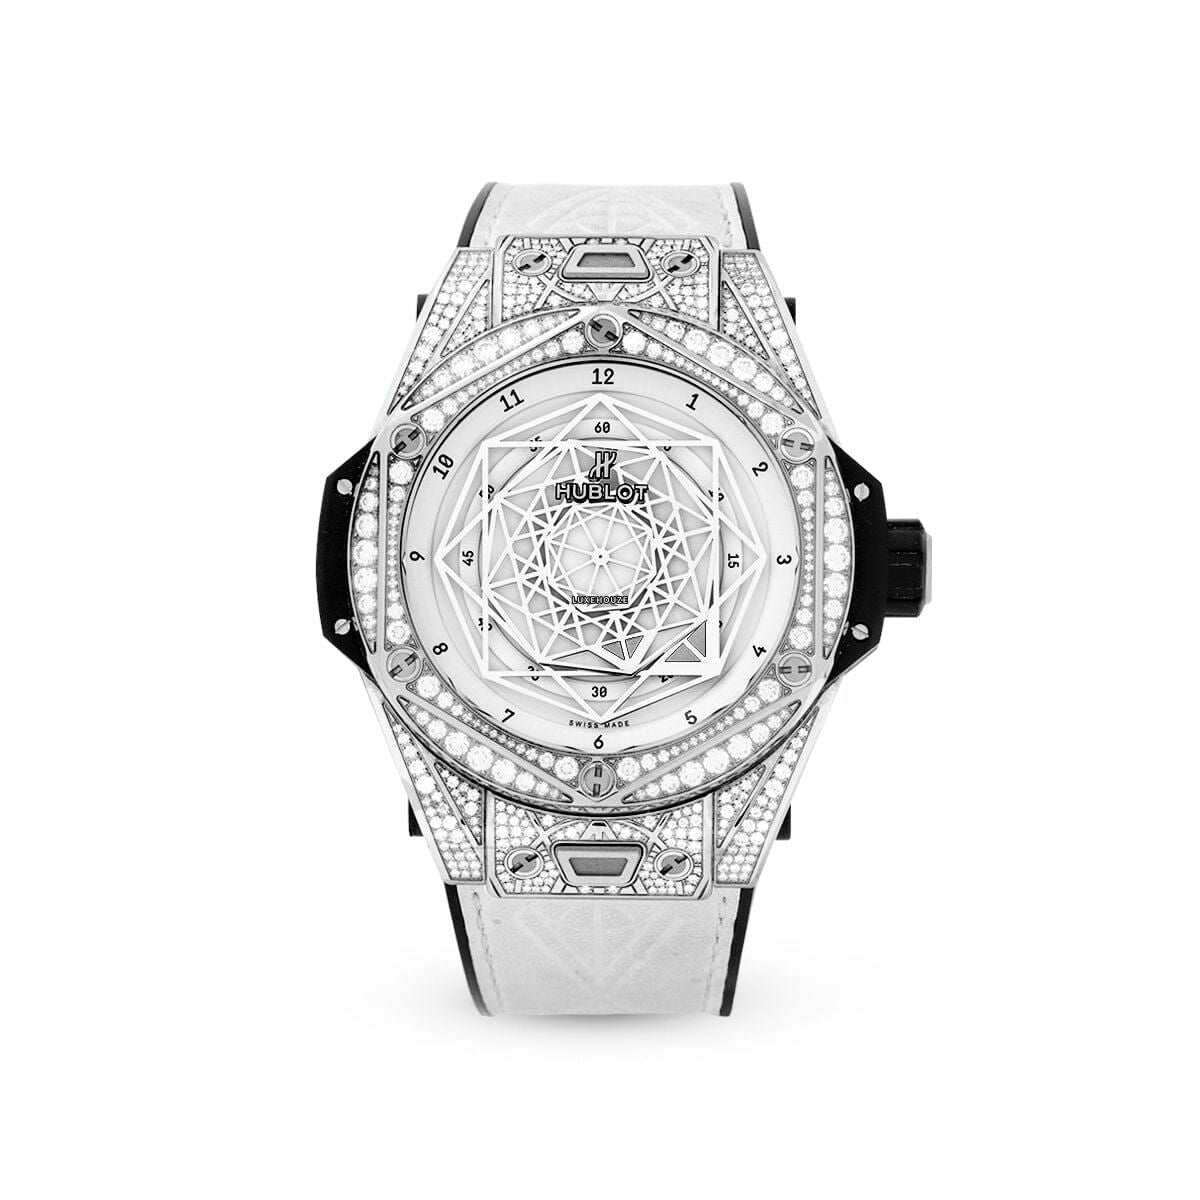 Big Bang 45mm 415.NX.2027.VR.1704.MXM18 White Watches Hublot 